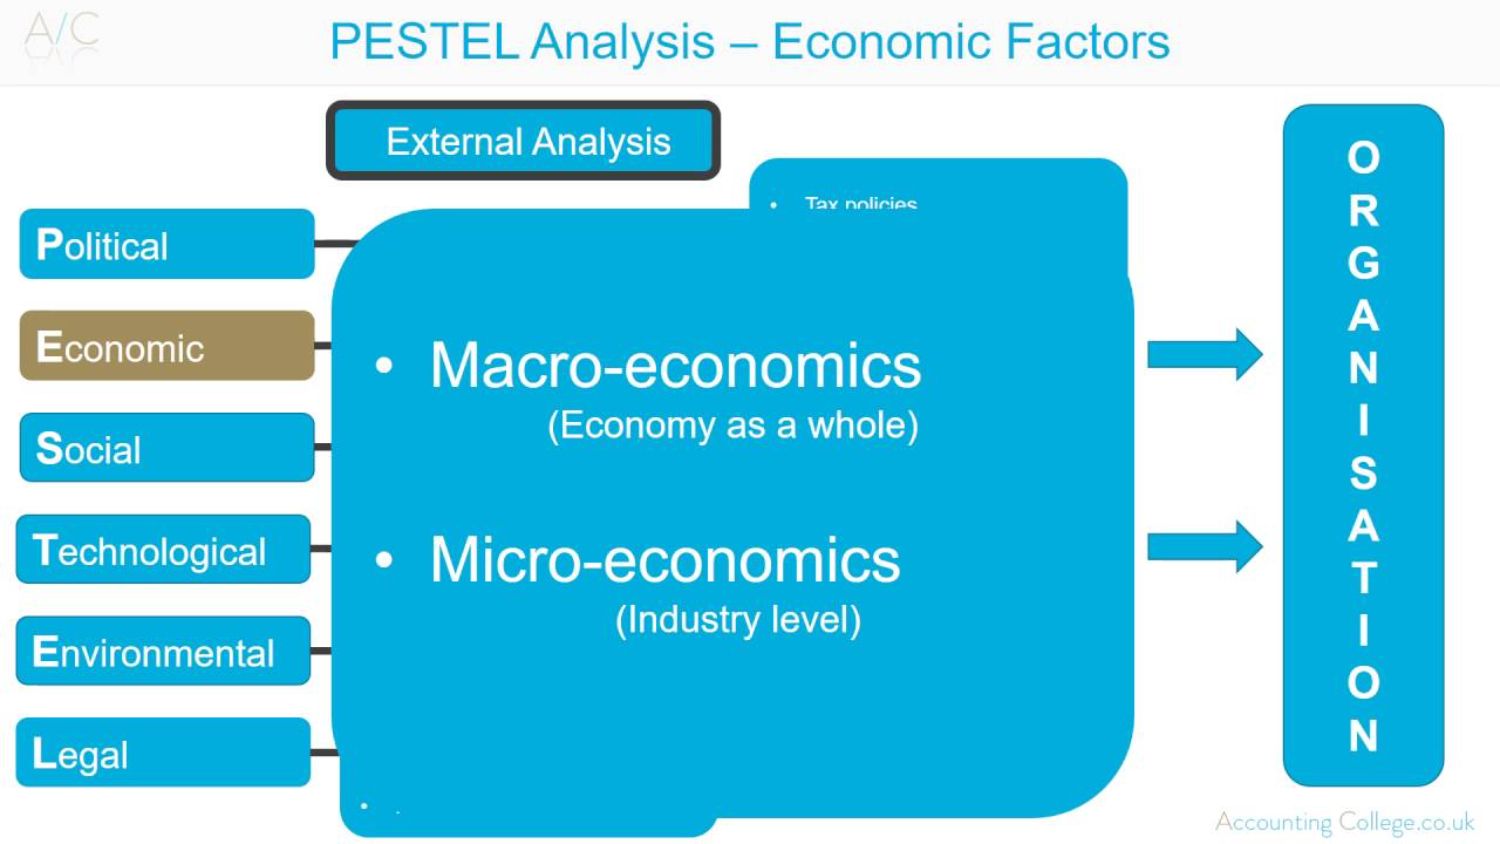 Economic factors